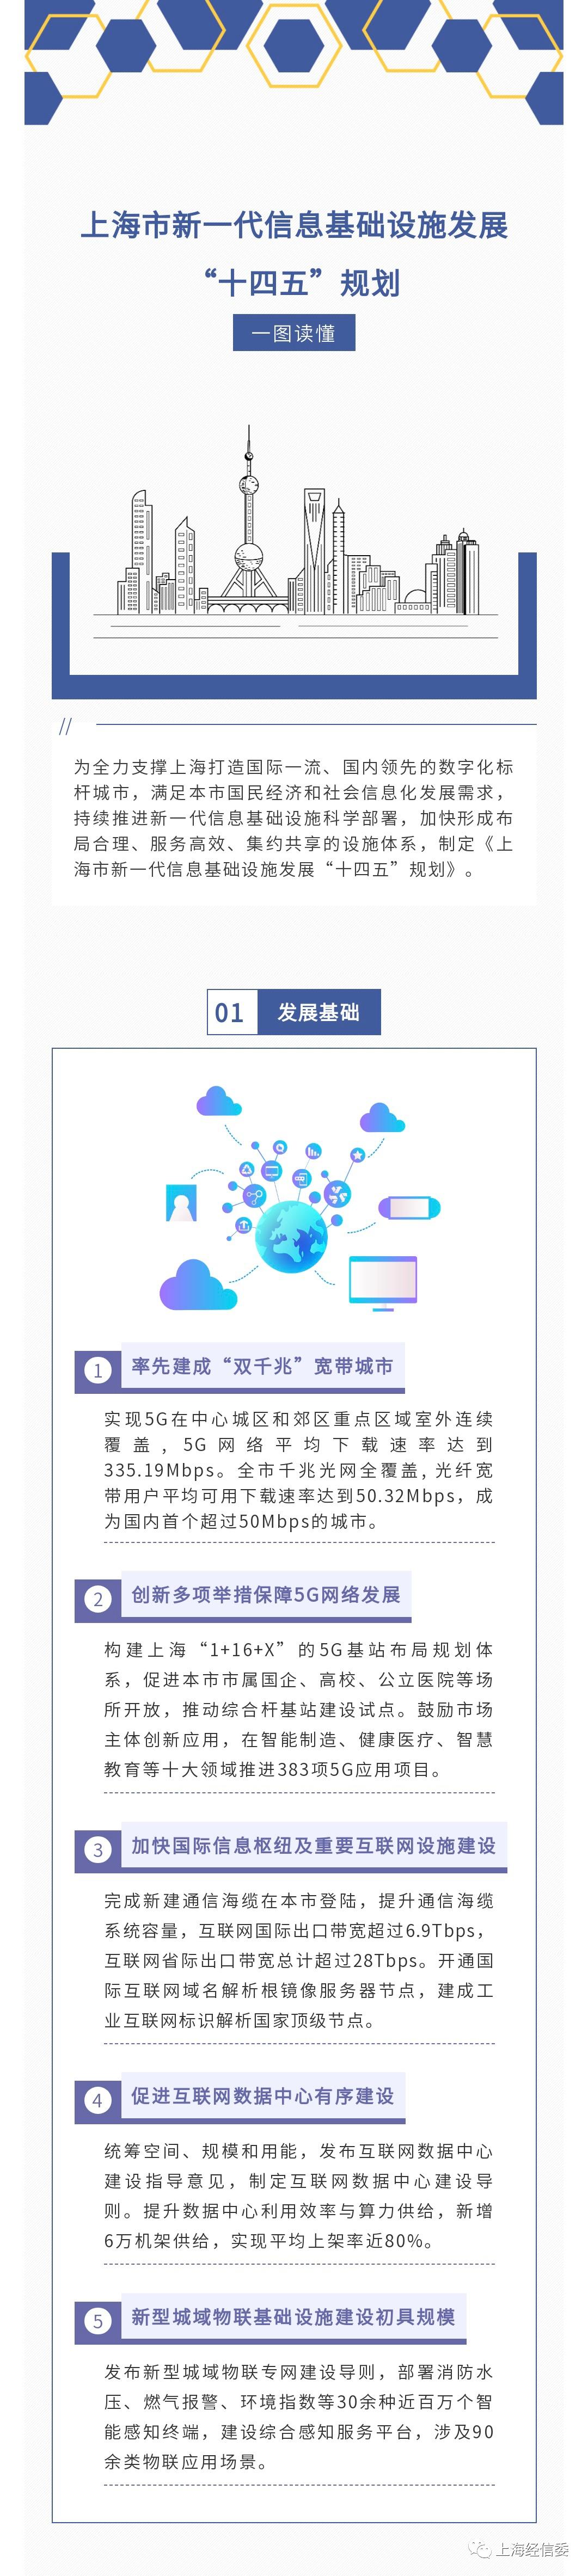 【图解】一图读懂《上海市新一代信息基础设施发展“十四五”规划》